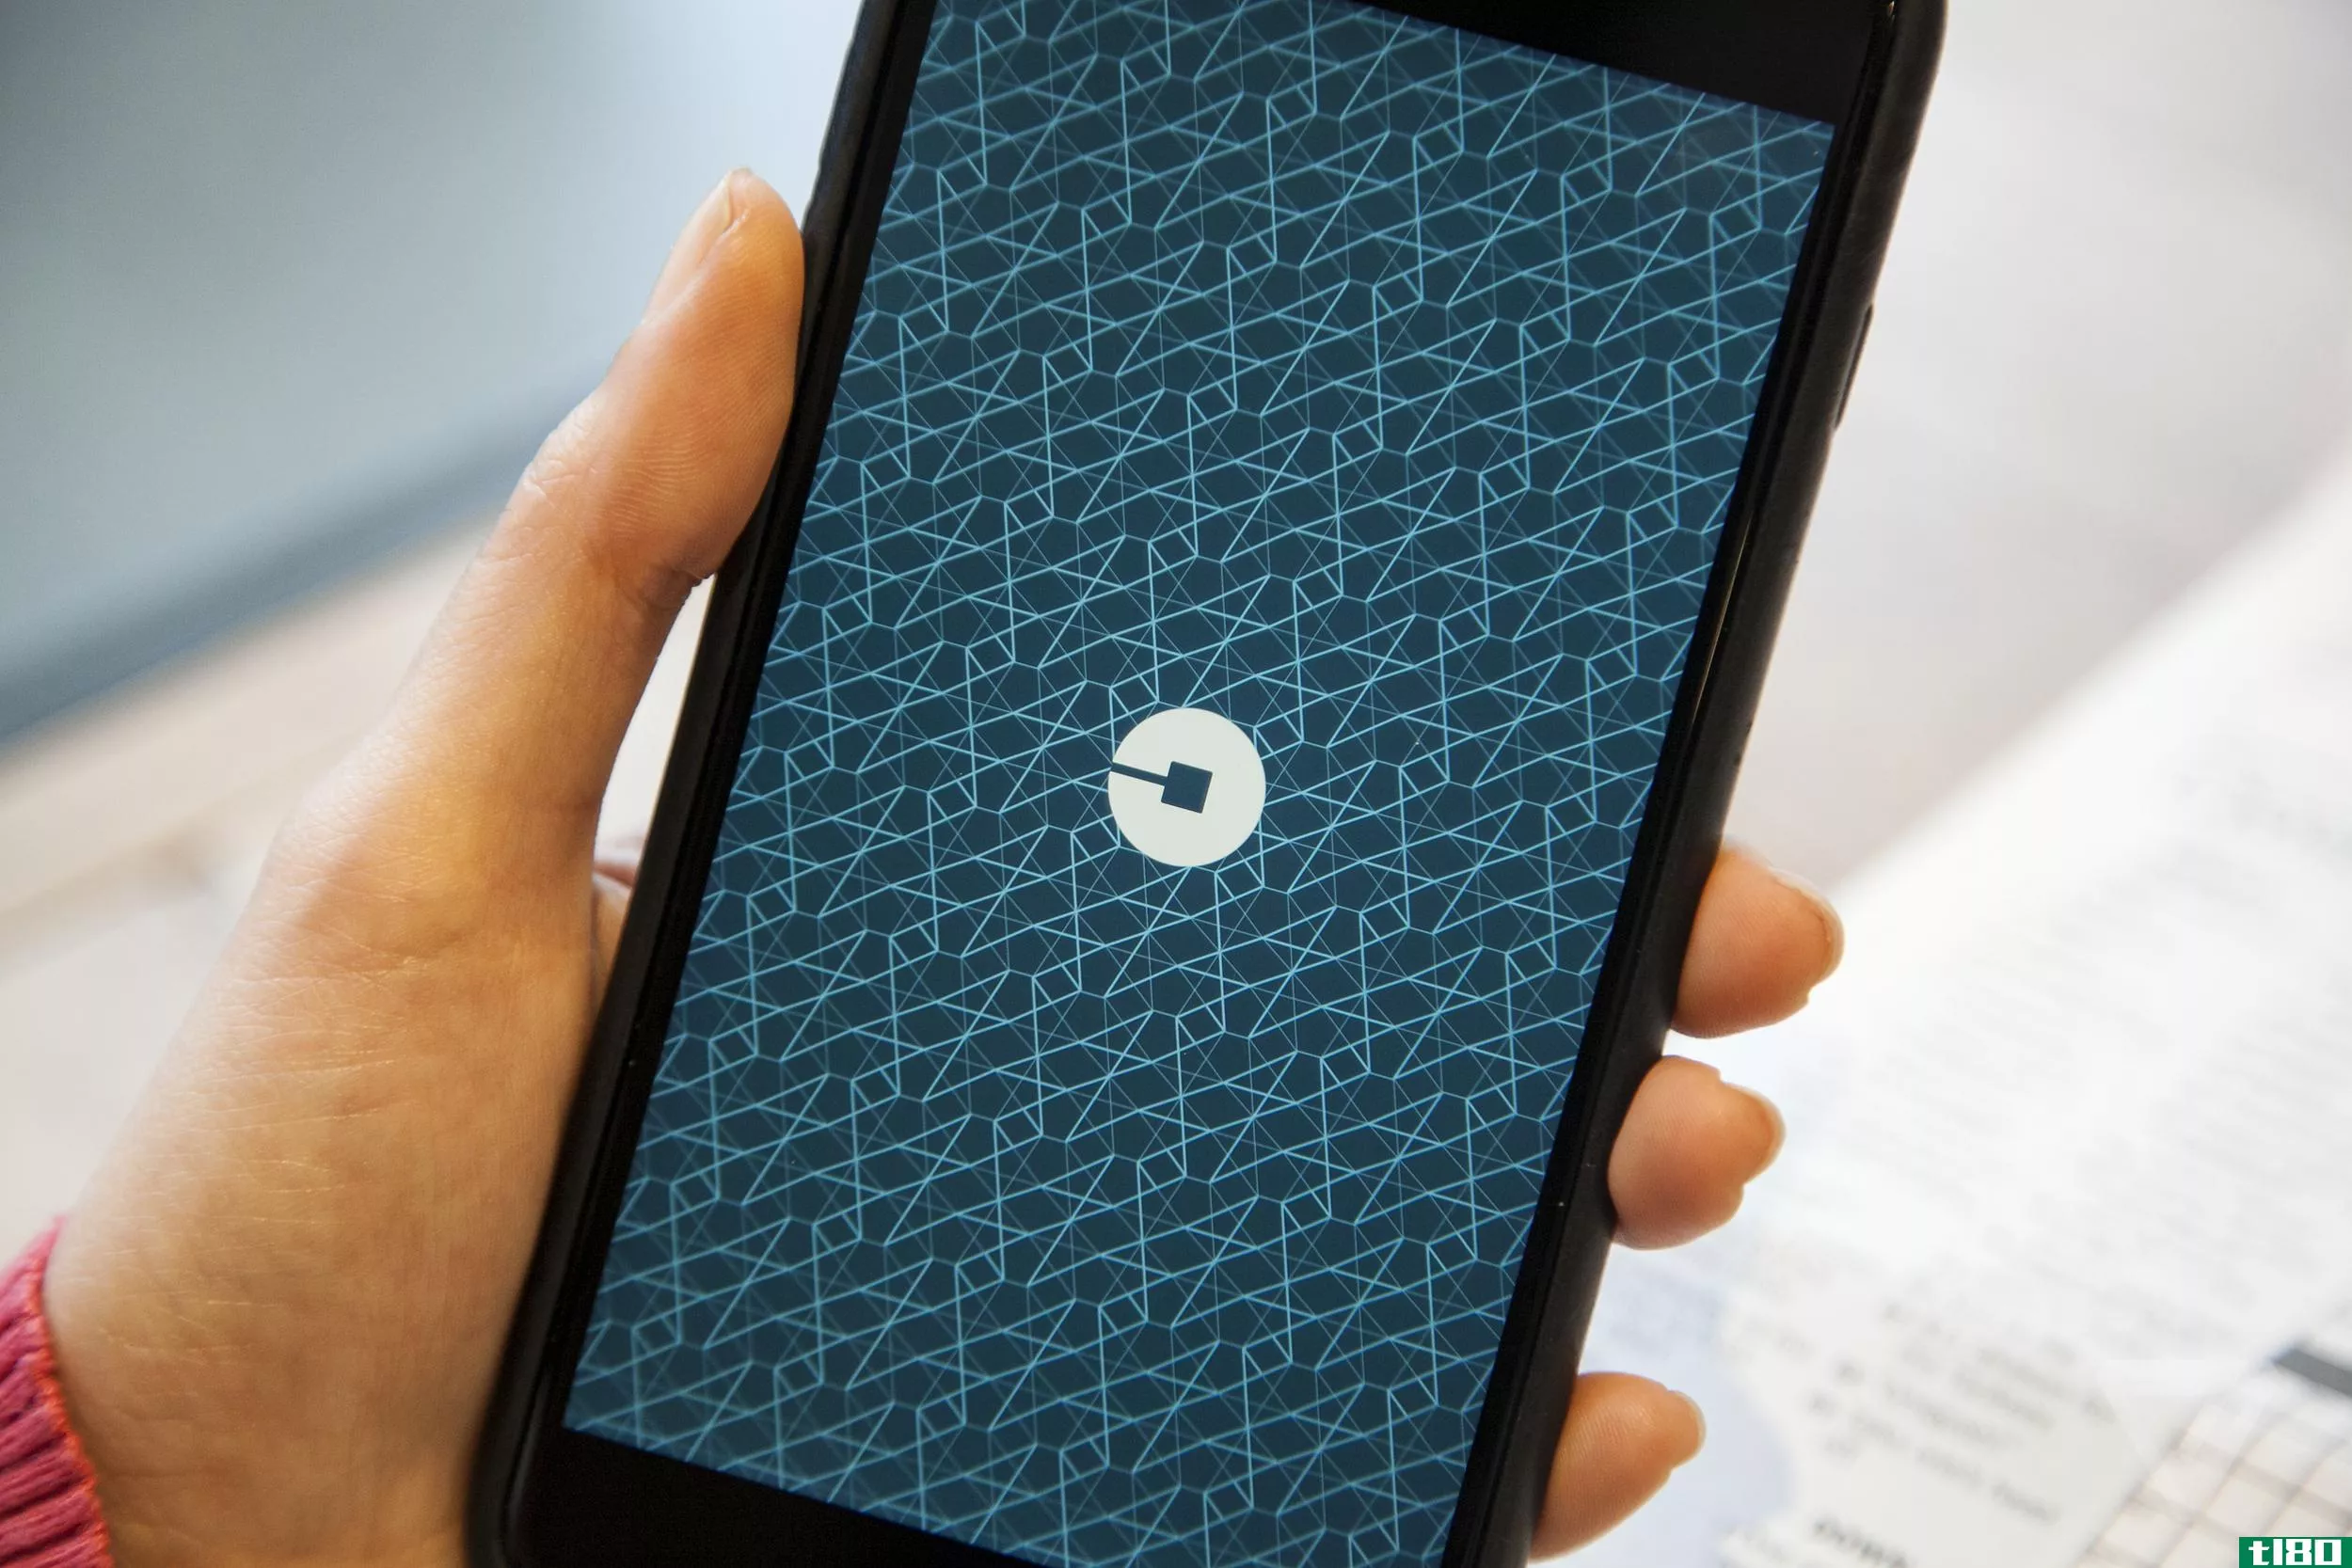 uberpool现在将保证到达时间，否则您下次旅行可享受2美元优惠